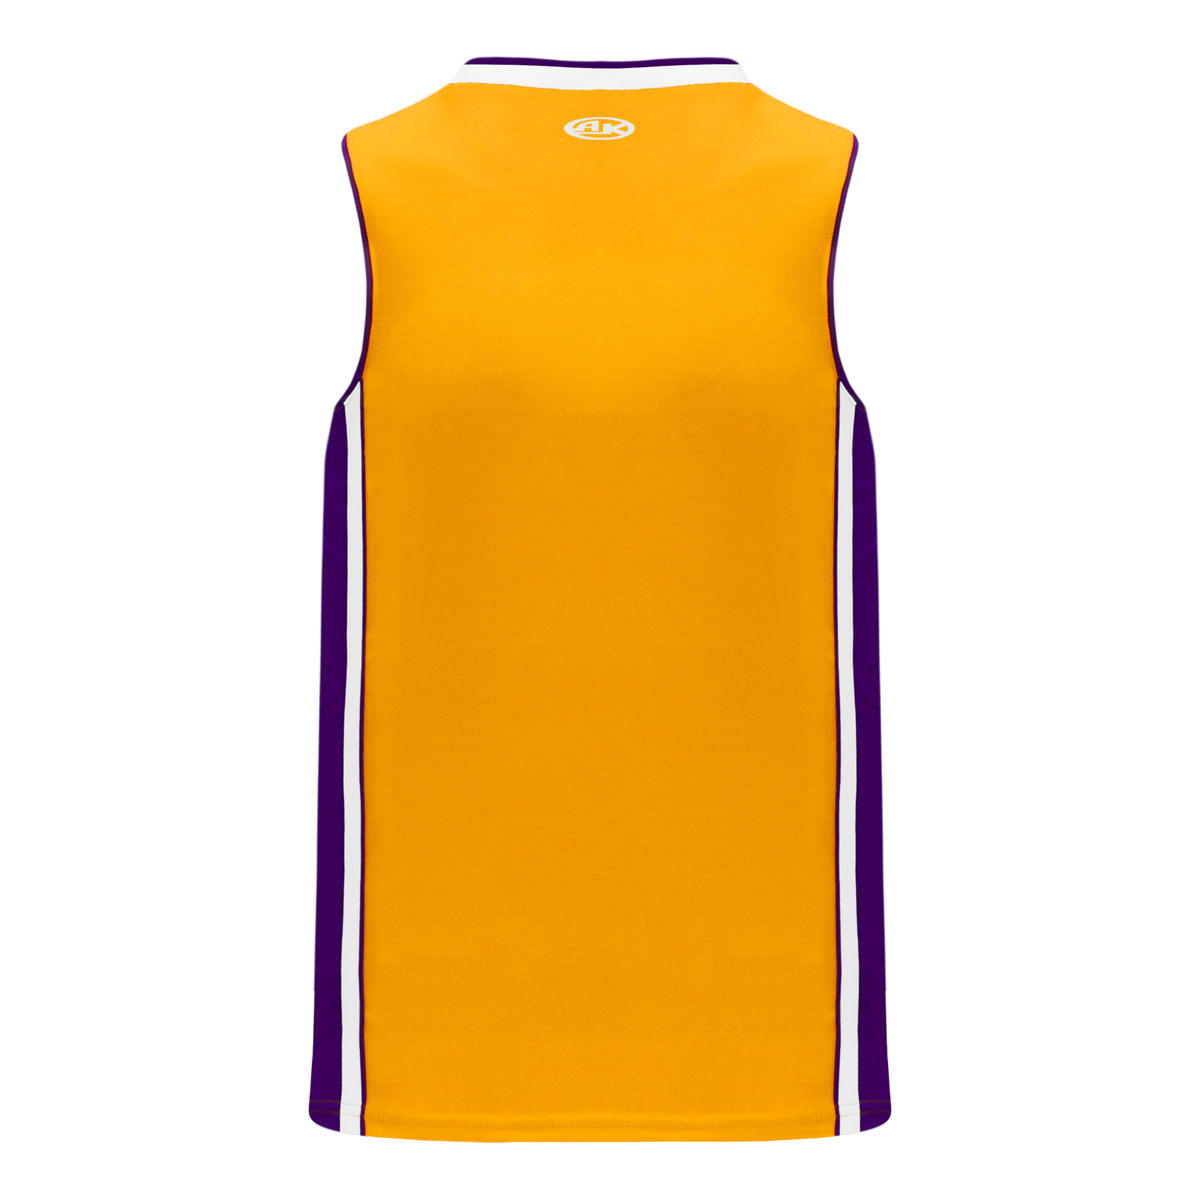 Athletic Knit (AK) B1715A-726 Adult LA Lakers White Pro Basketball